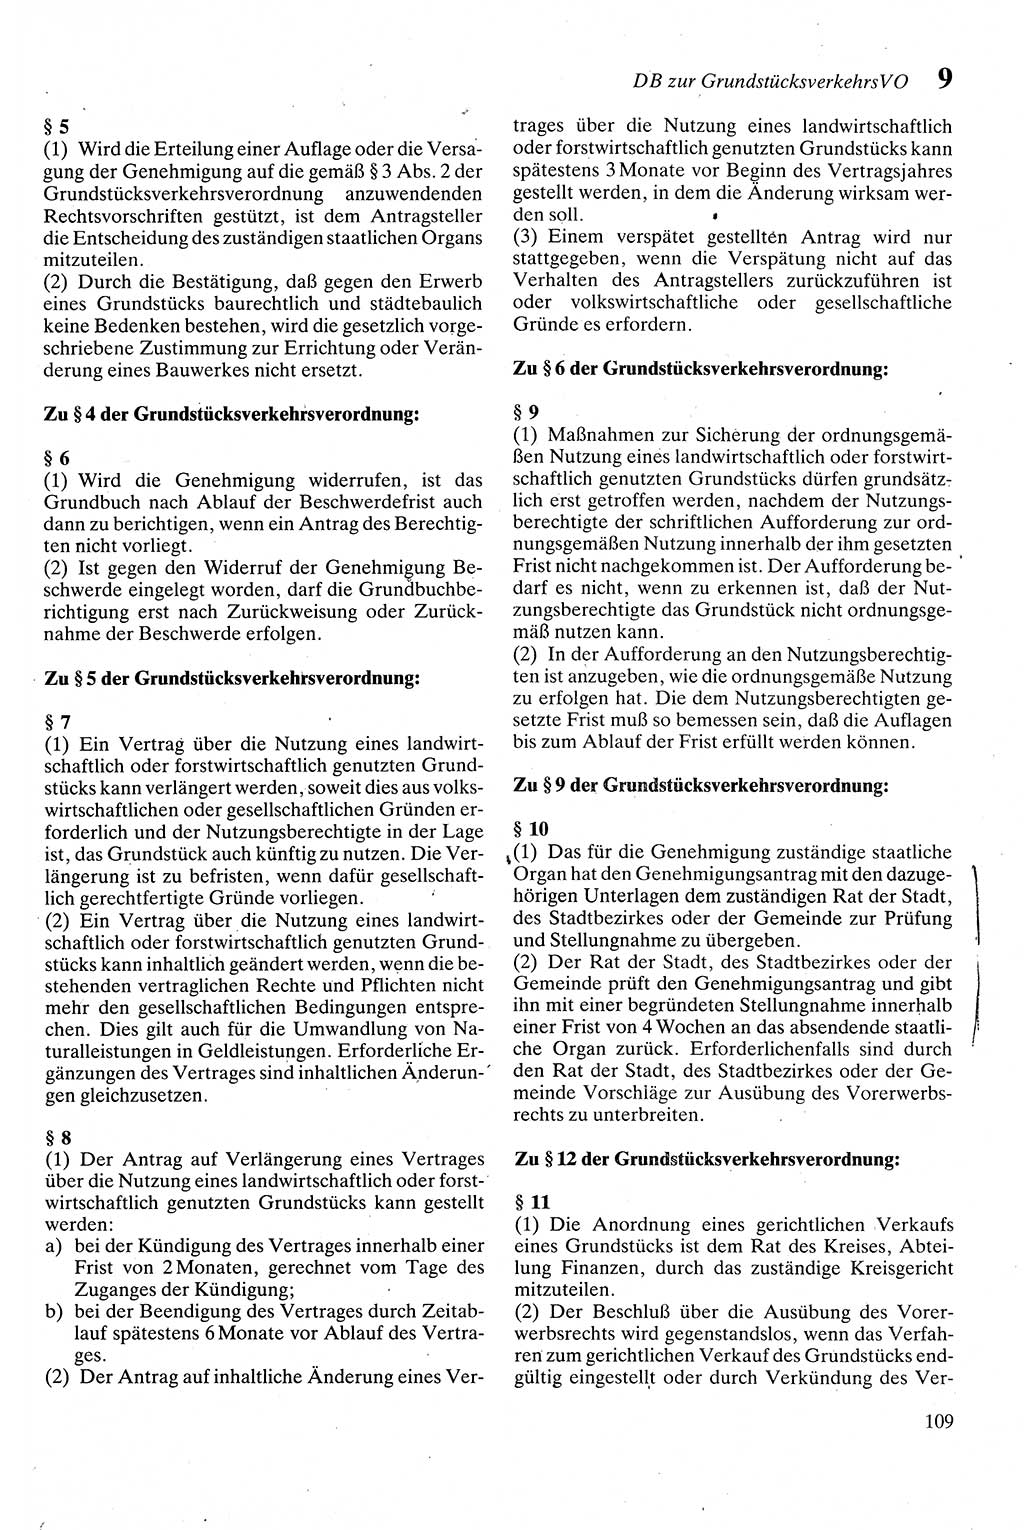 Zivilgesetzbuch (ZVG) sowie angrenzende Gesetze und Bestimmungen [Deutsche Demokratische Republik (DDR)] 1975, Seite 109 (ZGB Ges. Best. DDR 1975, S. 109)